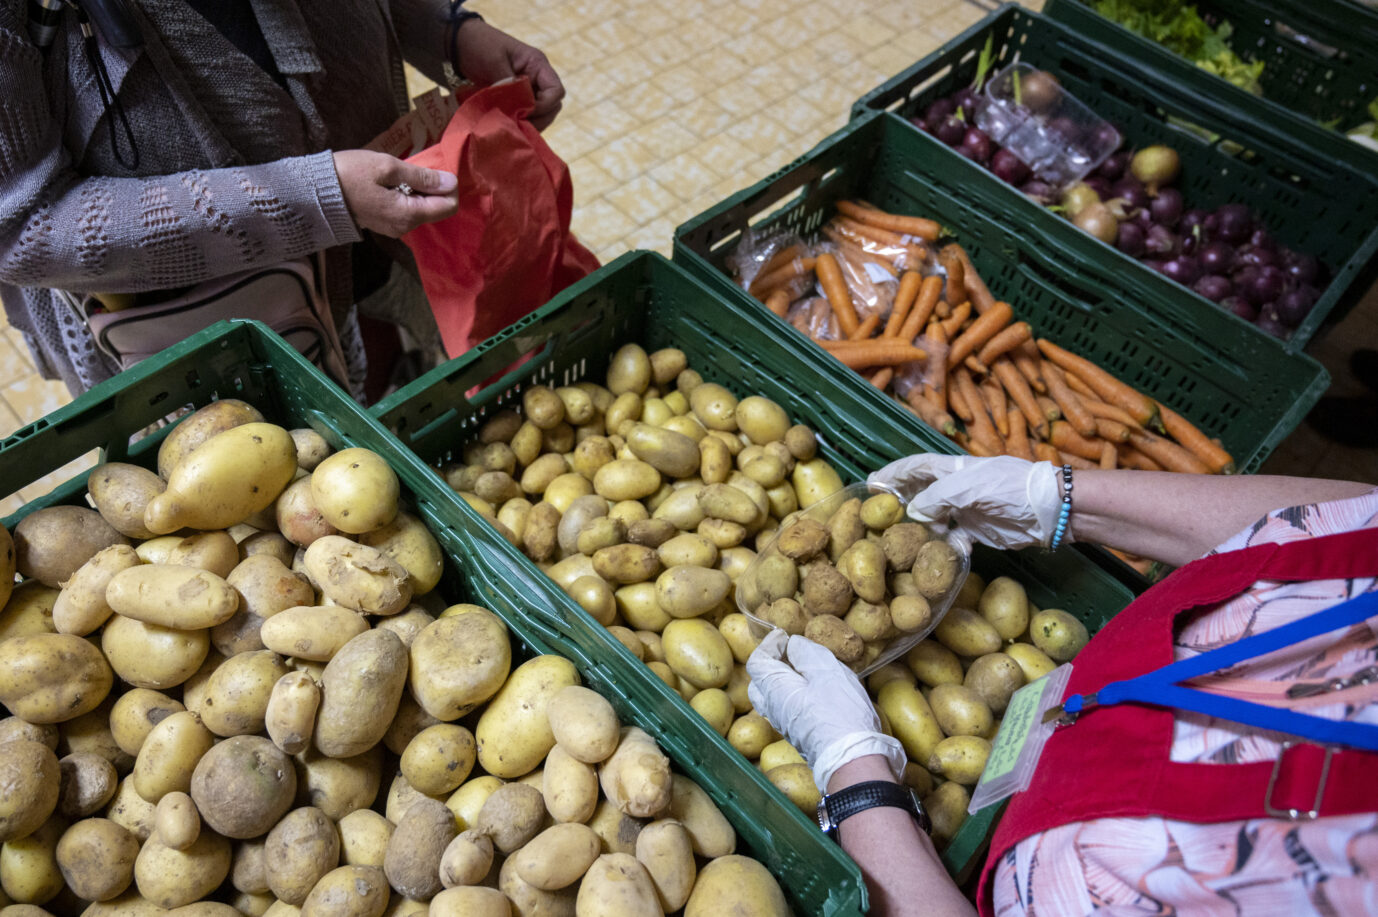 Helfer der Tafel verteilen Lebensmittel an Bedürftige: Supermärkte haben mittlerweile weniger abzugeben